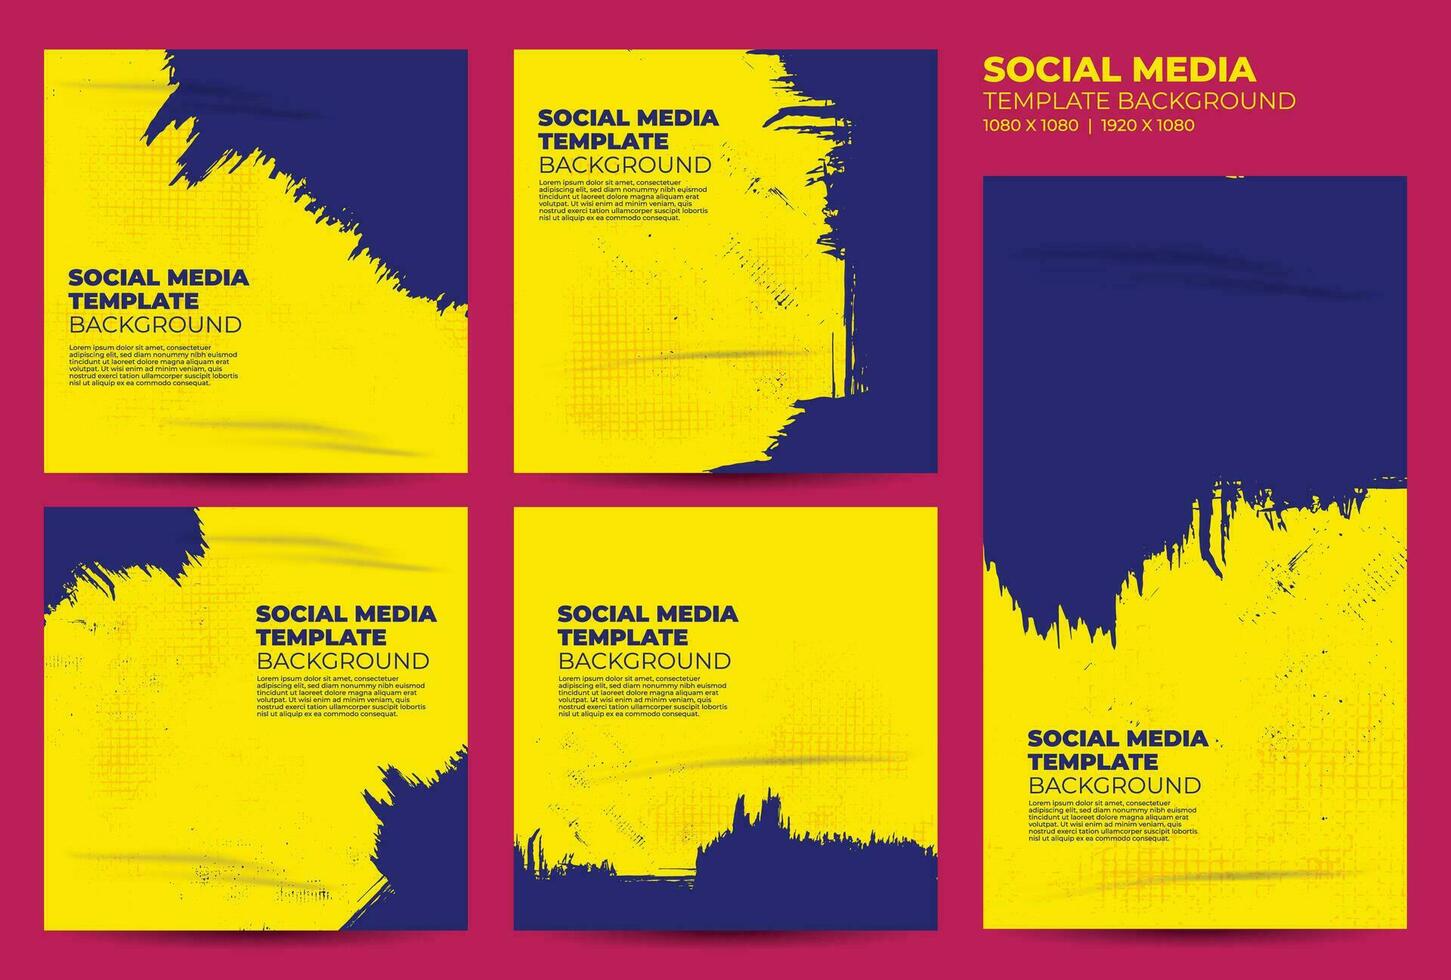 sociale media inviare modello sfondo vettore, blu e giallo grunge sociale media banner vettore